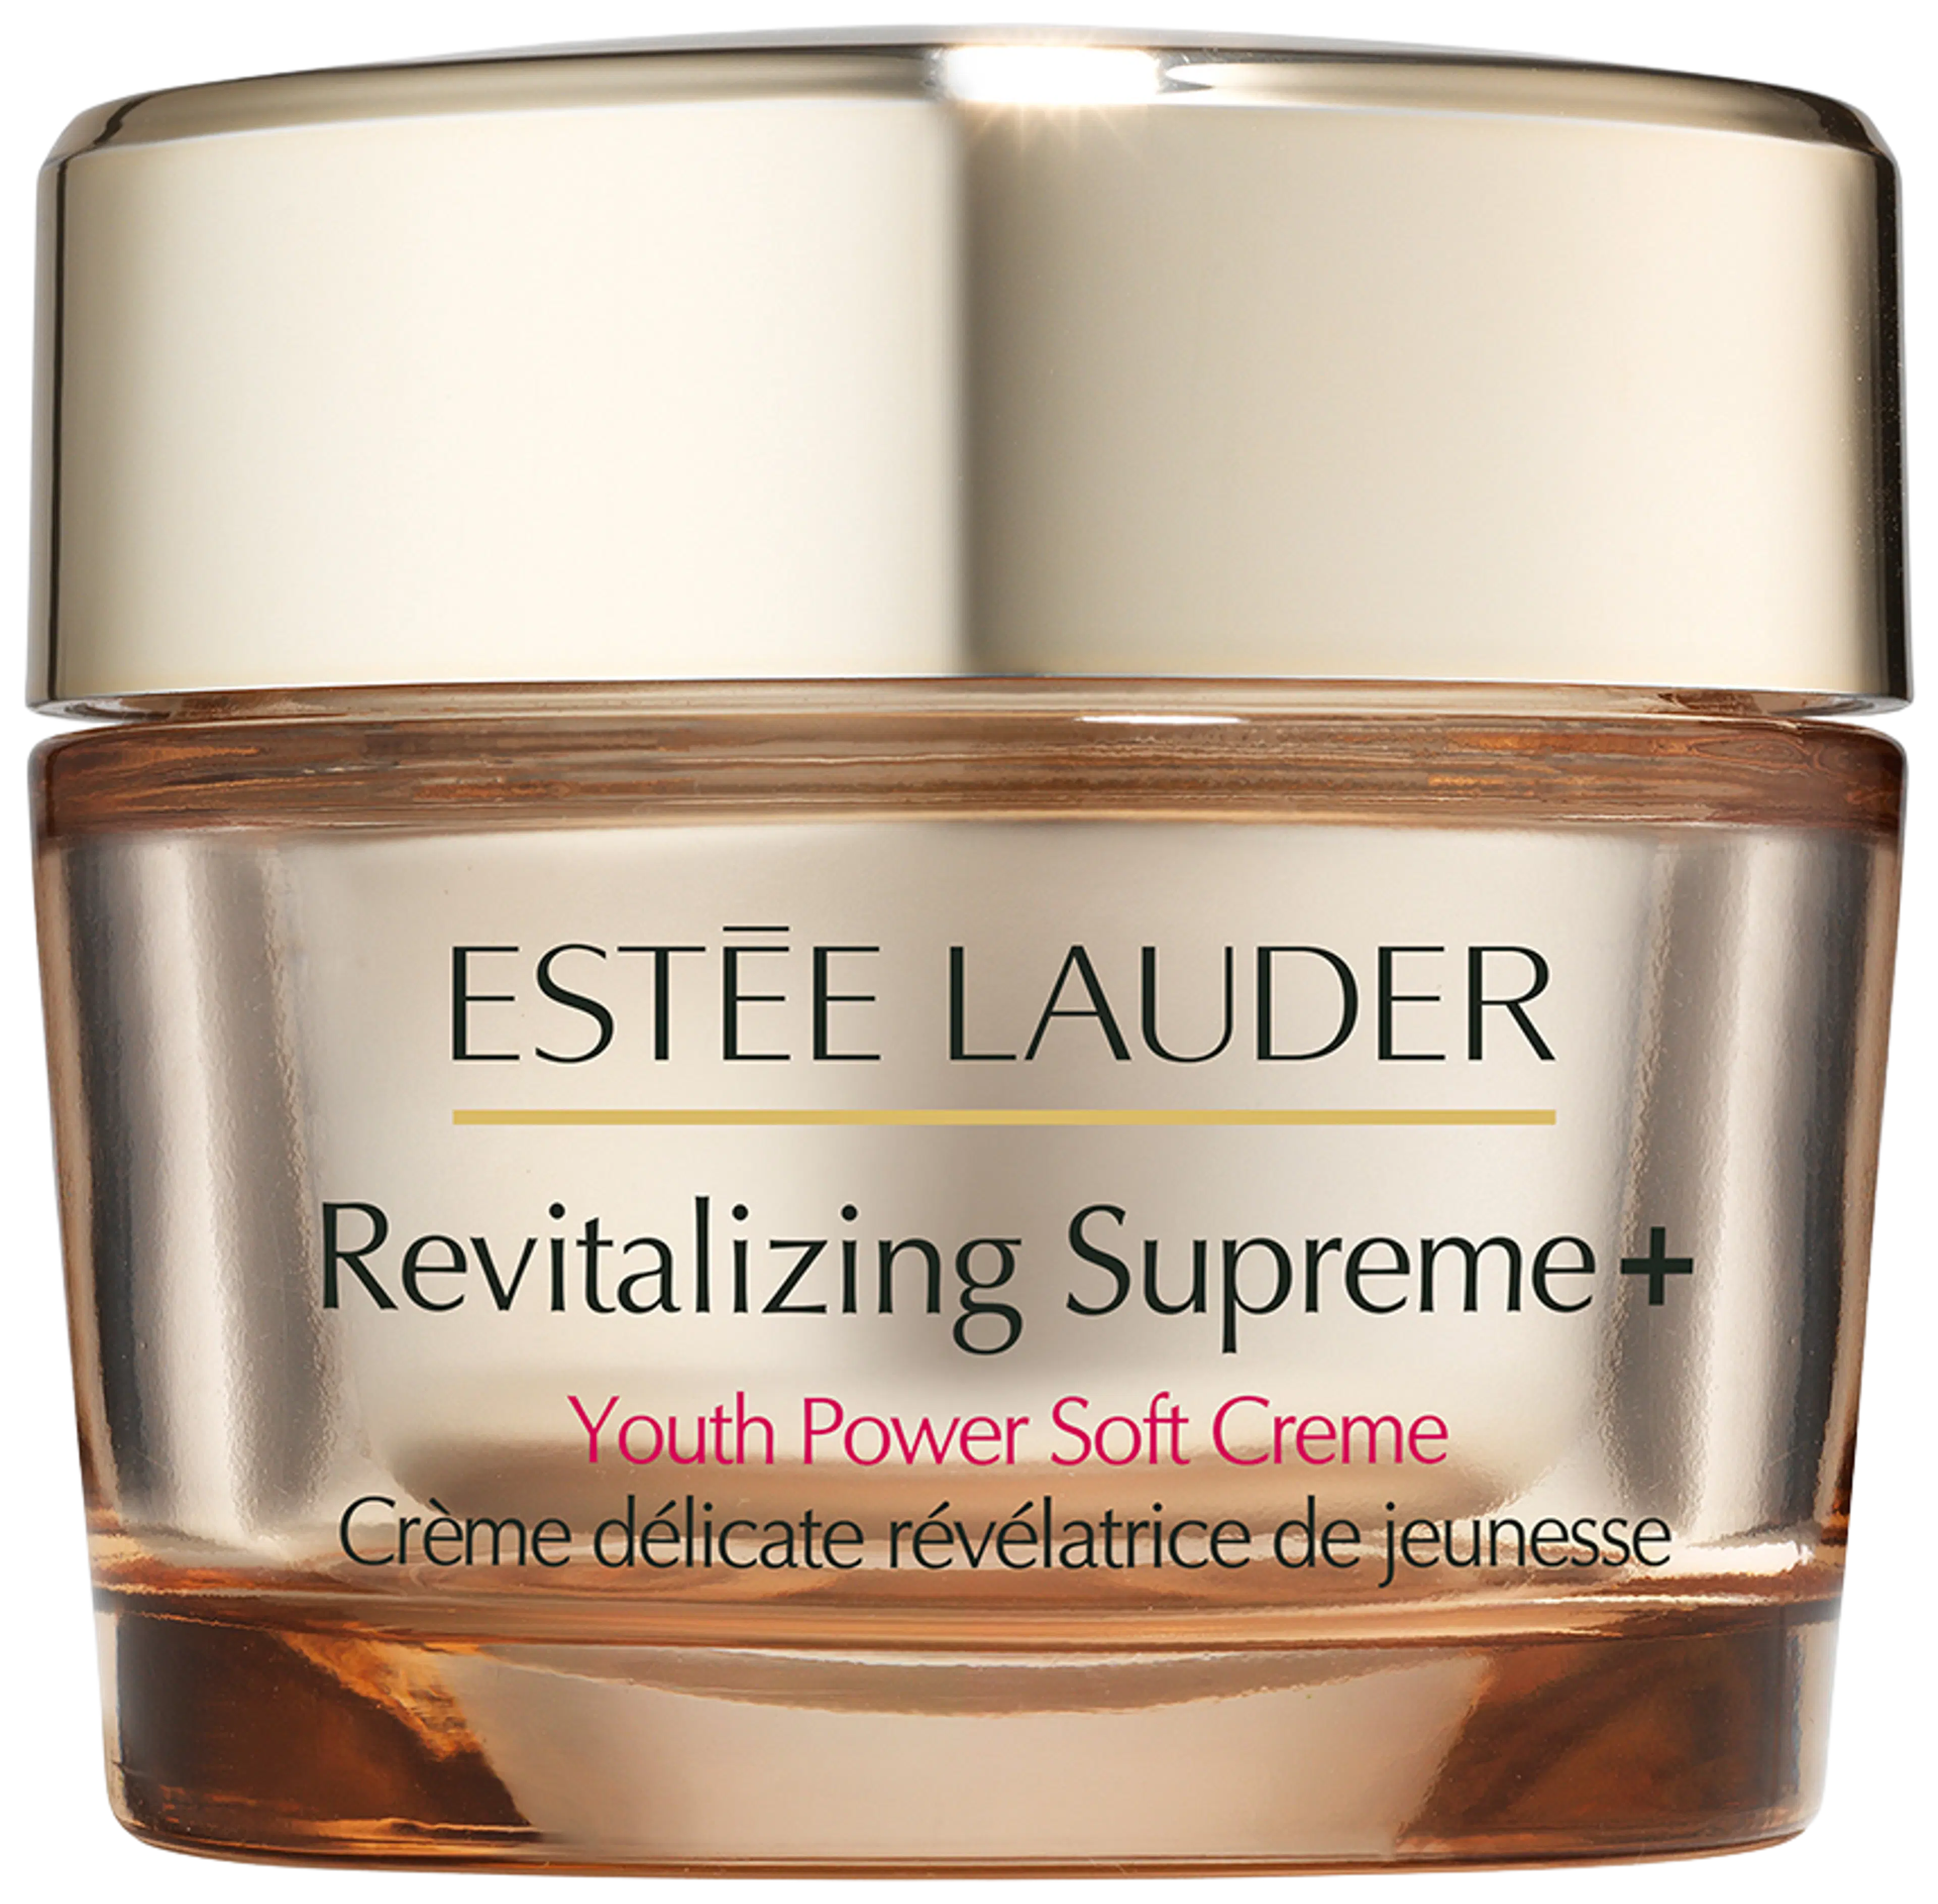 Estée Lauder Revitalizing Supreme+ Youth Power Soft Creme päivävoide 30 ml